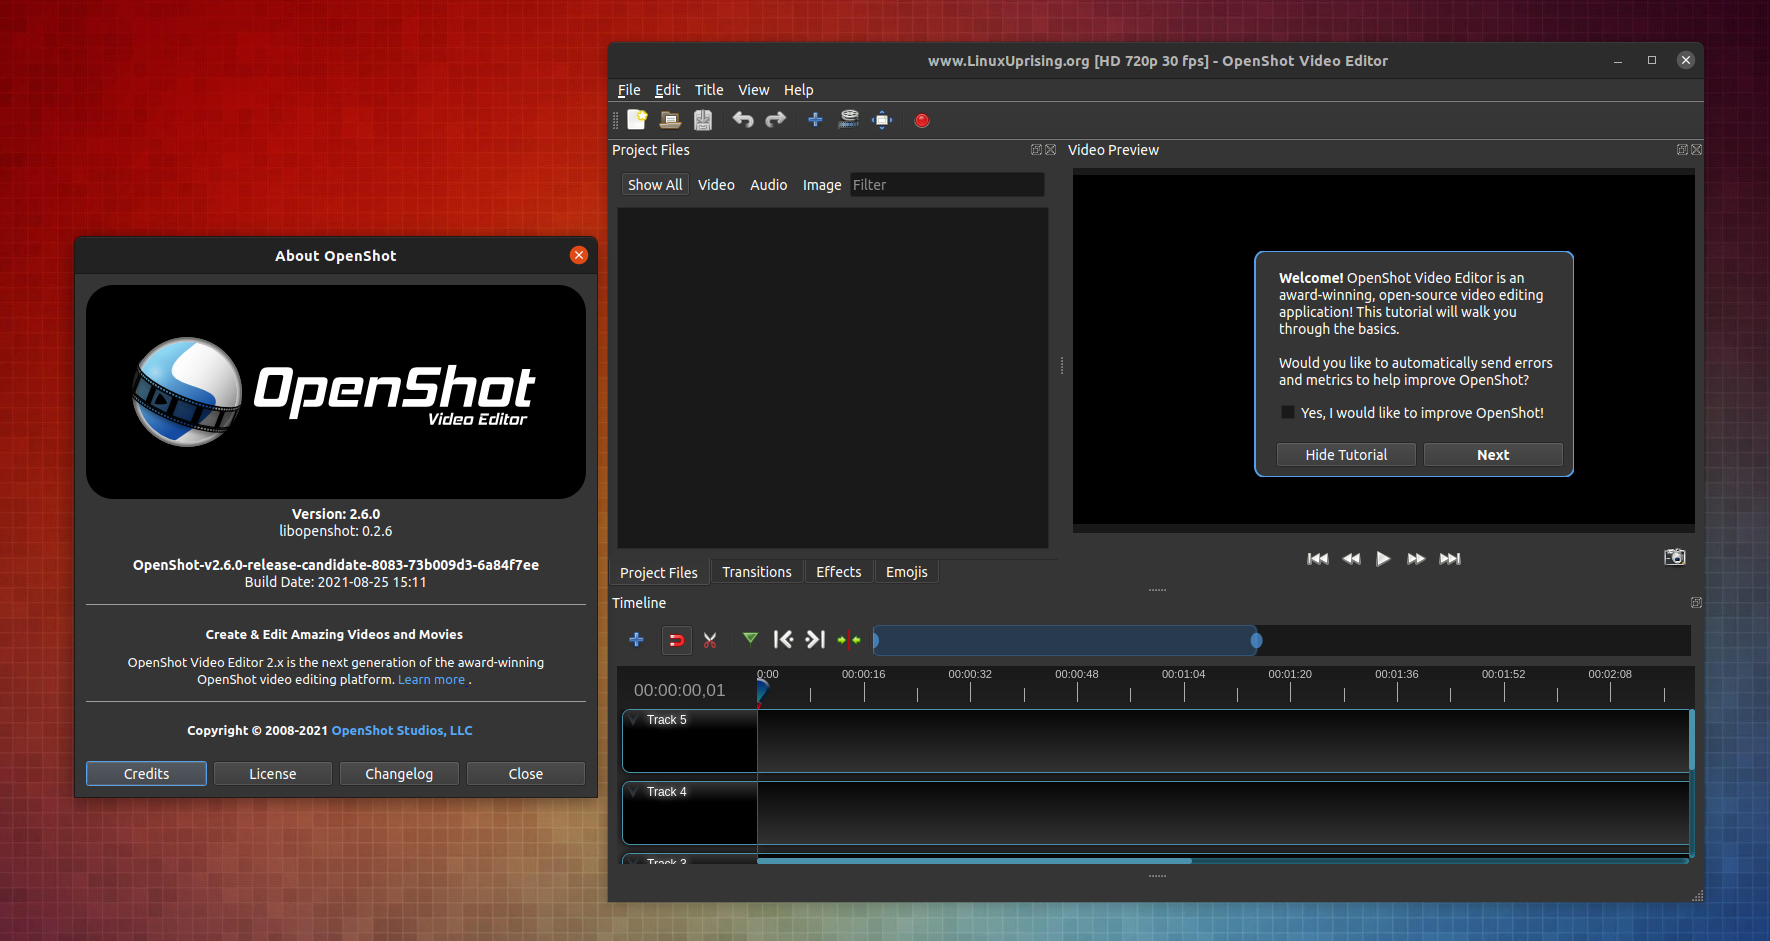 Editor de vídeo OpenShot 2.6 lançado com novos efeitos de visão computacional e IA